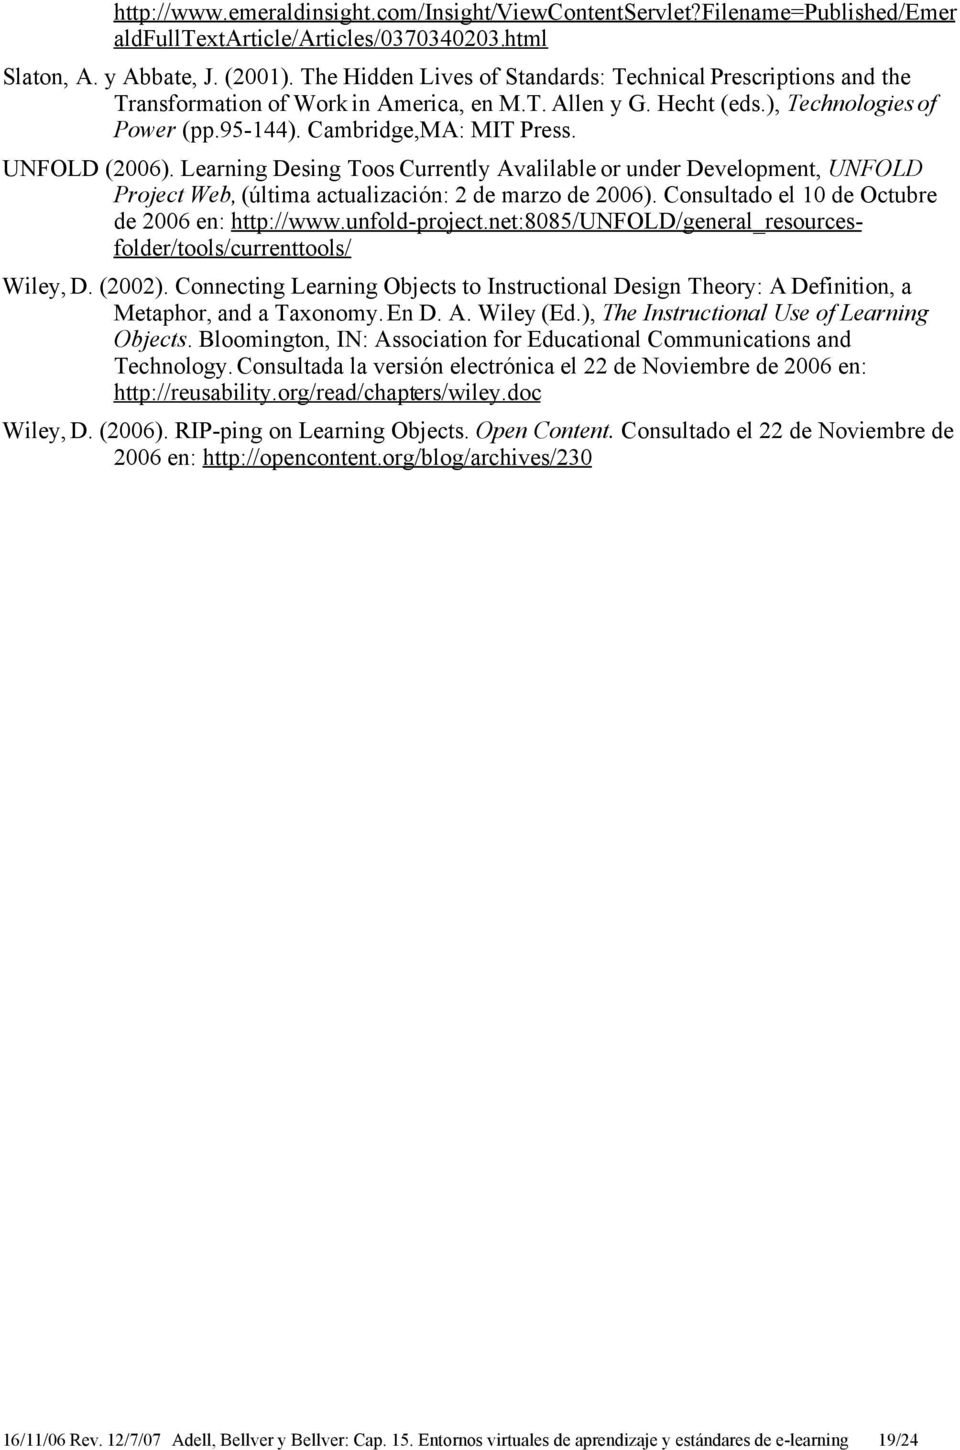 UNFOLD (2006). Learning Desing Toos Currently Avalilable or under Development, UNFOLD Project Web, (última actualización: 2 de marzo de 2006). Consultado el 10 de Octubre de 2006 en: http://www.